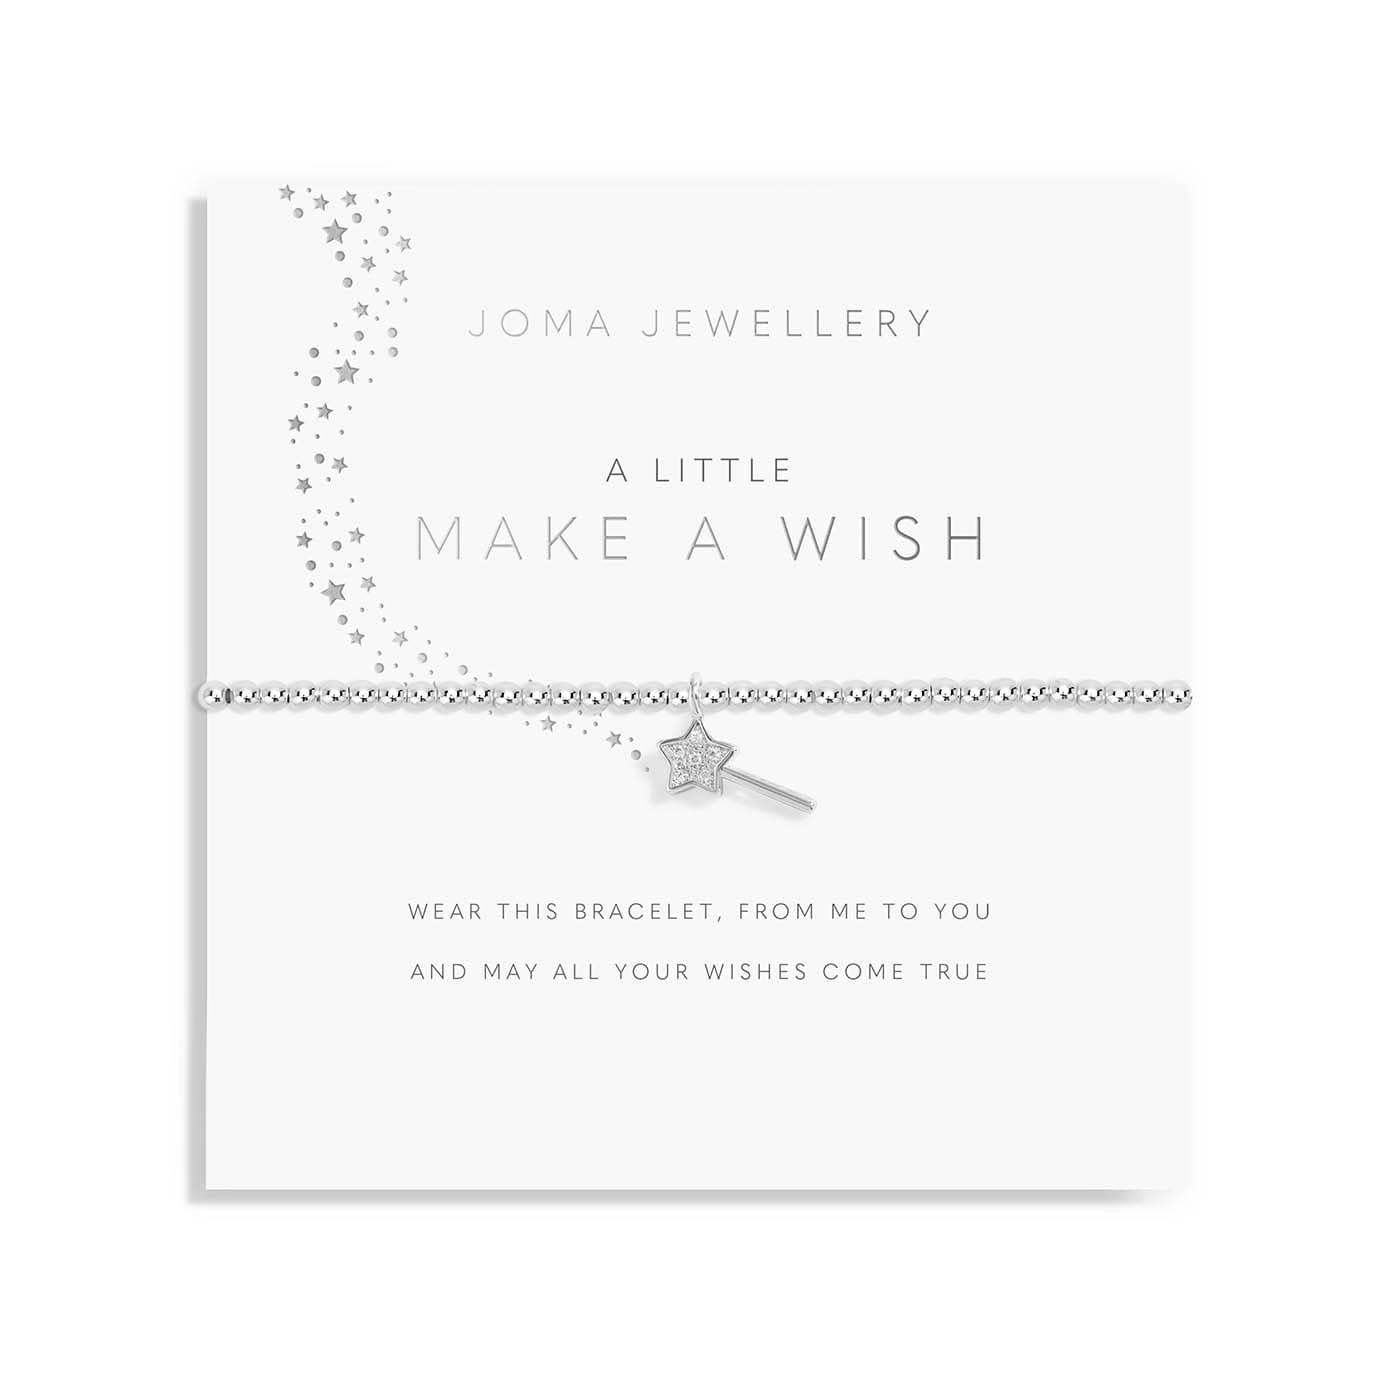 Joma Jewellery Childrens Bracelet Joma Jewellery Childrens Bracelet - A Little Make a Wish